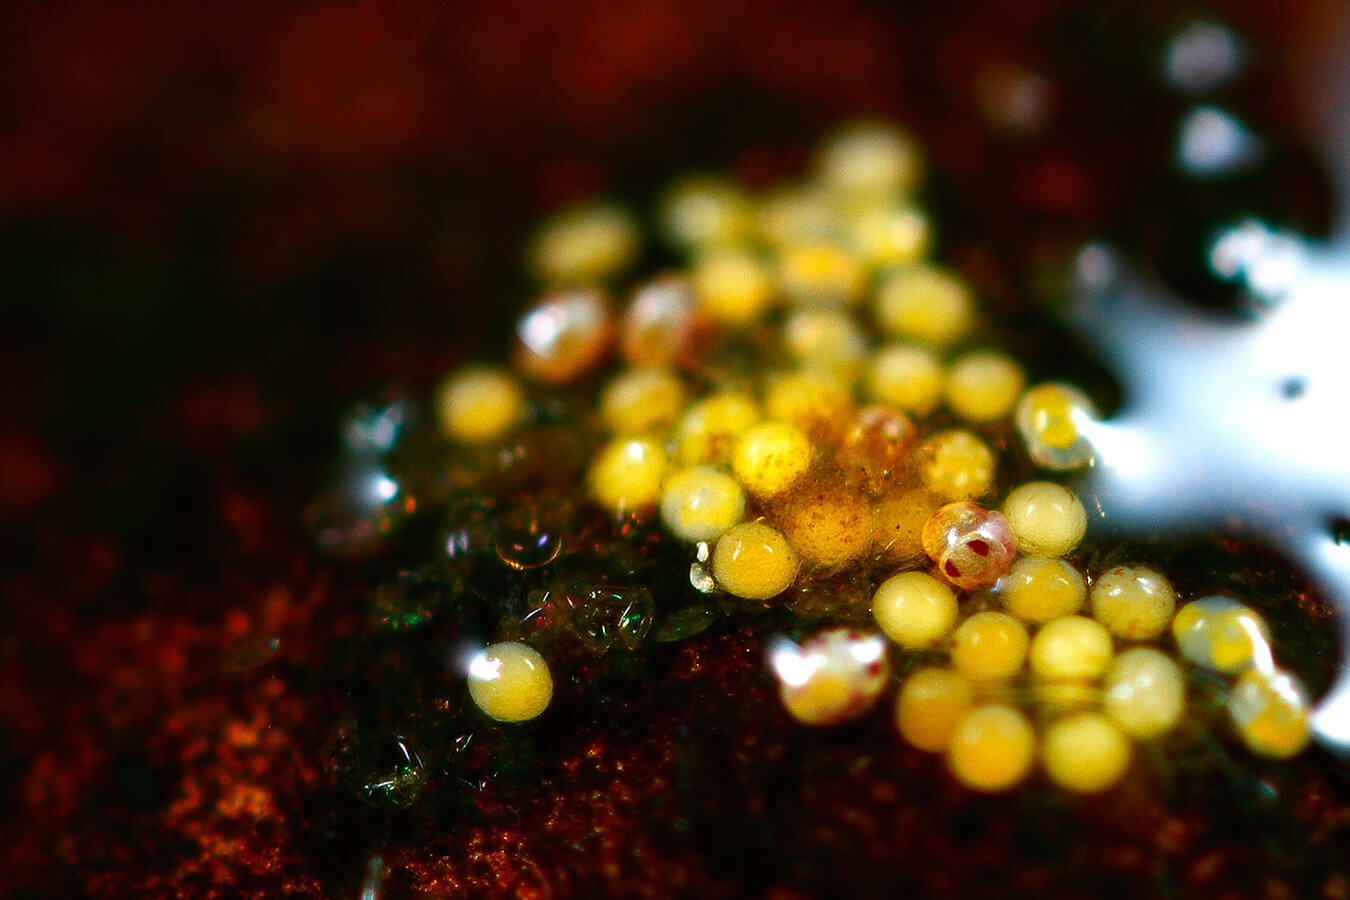 Œufs translucides, avec un embryon en formation, chez le collembole  Sminthurides aquaticus